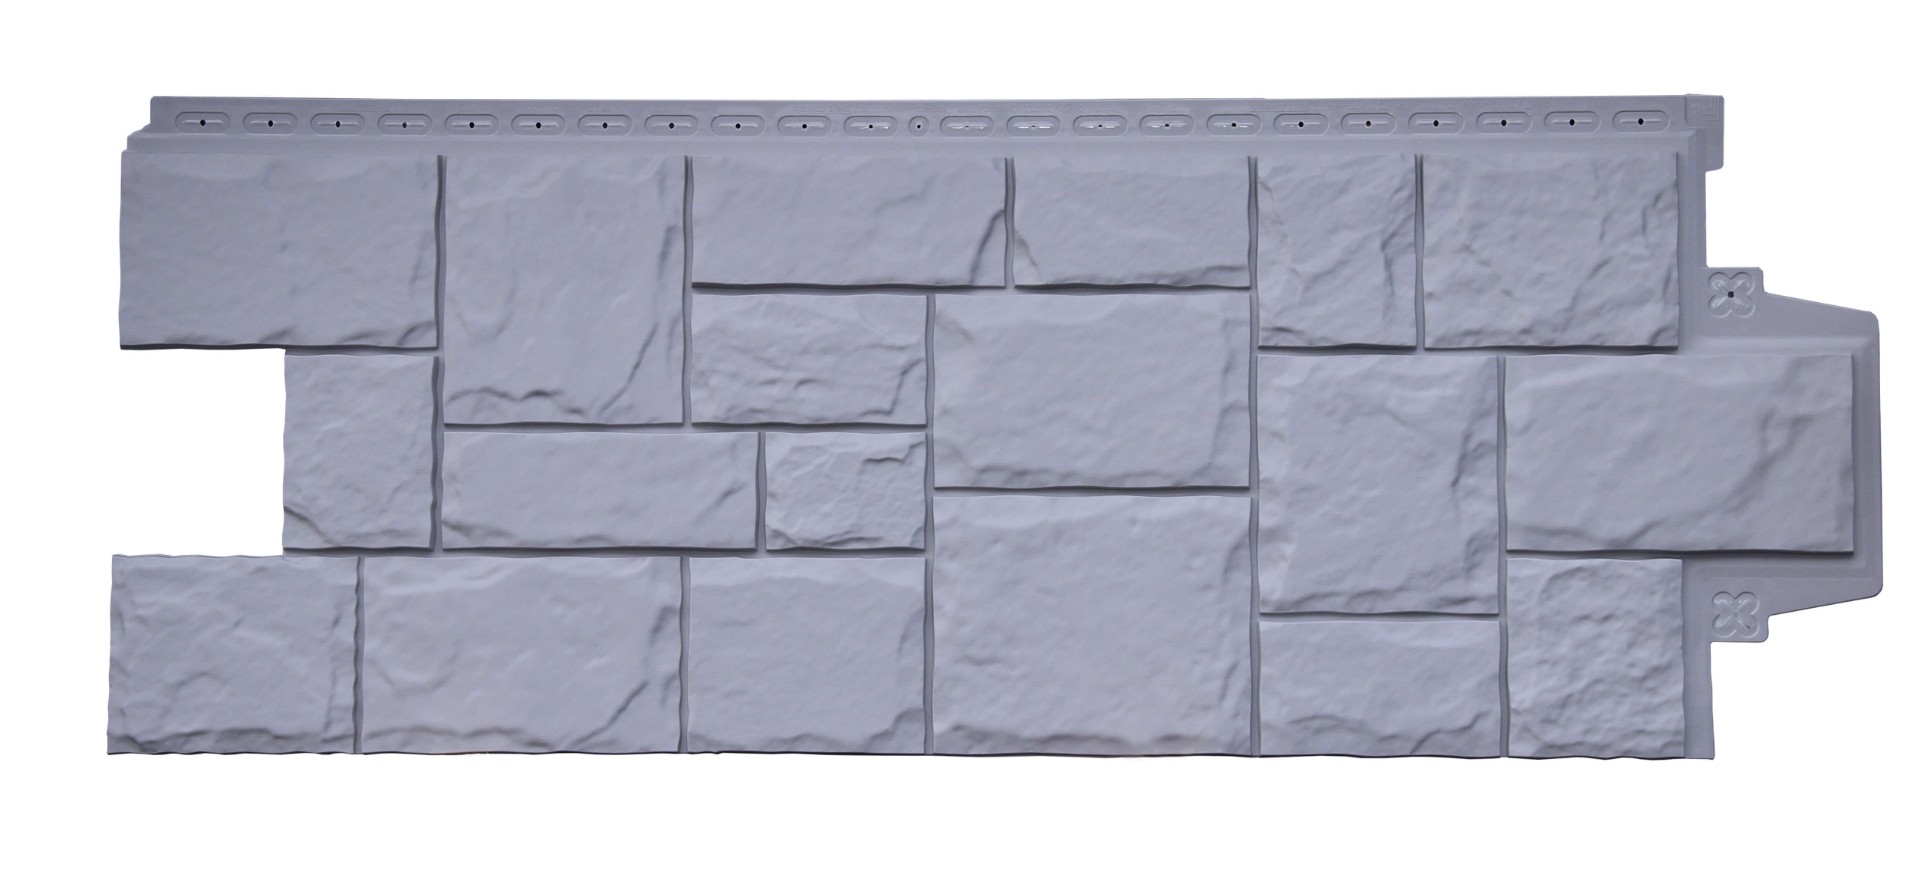 Фасадные панели GRAND LINE Коллекция Крупный Камень Стандарт Известняк купить в санкт-петербурге